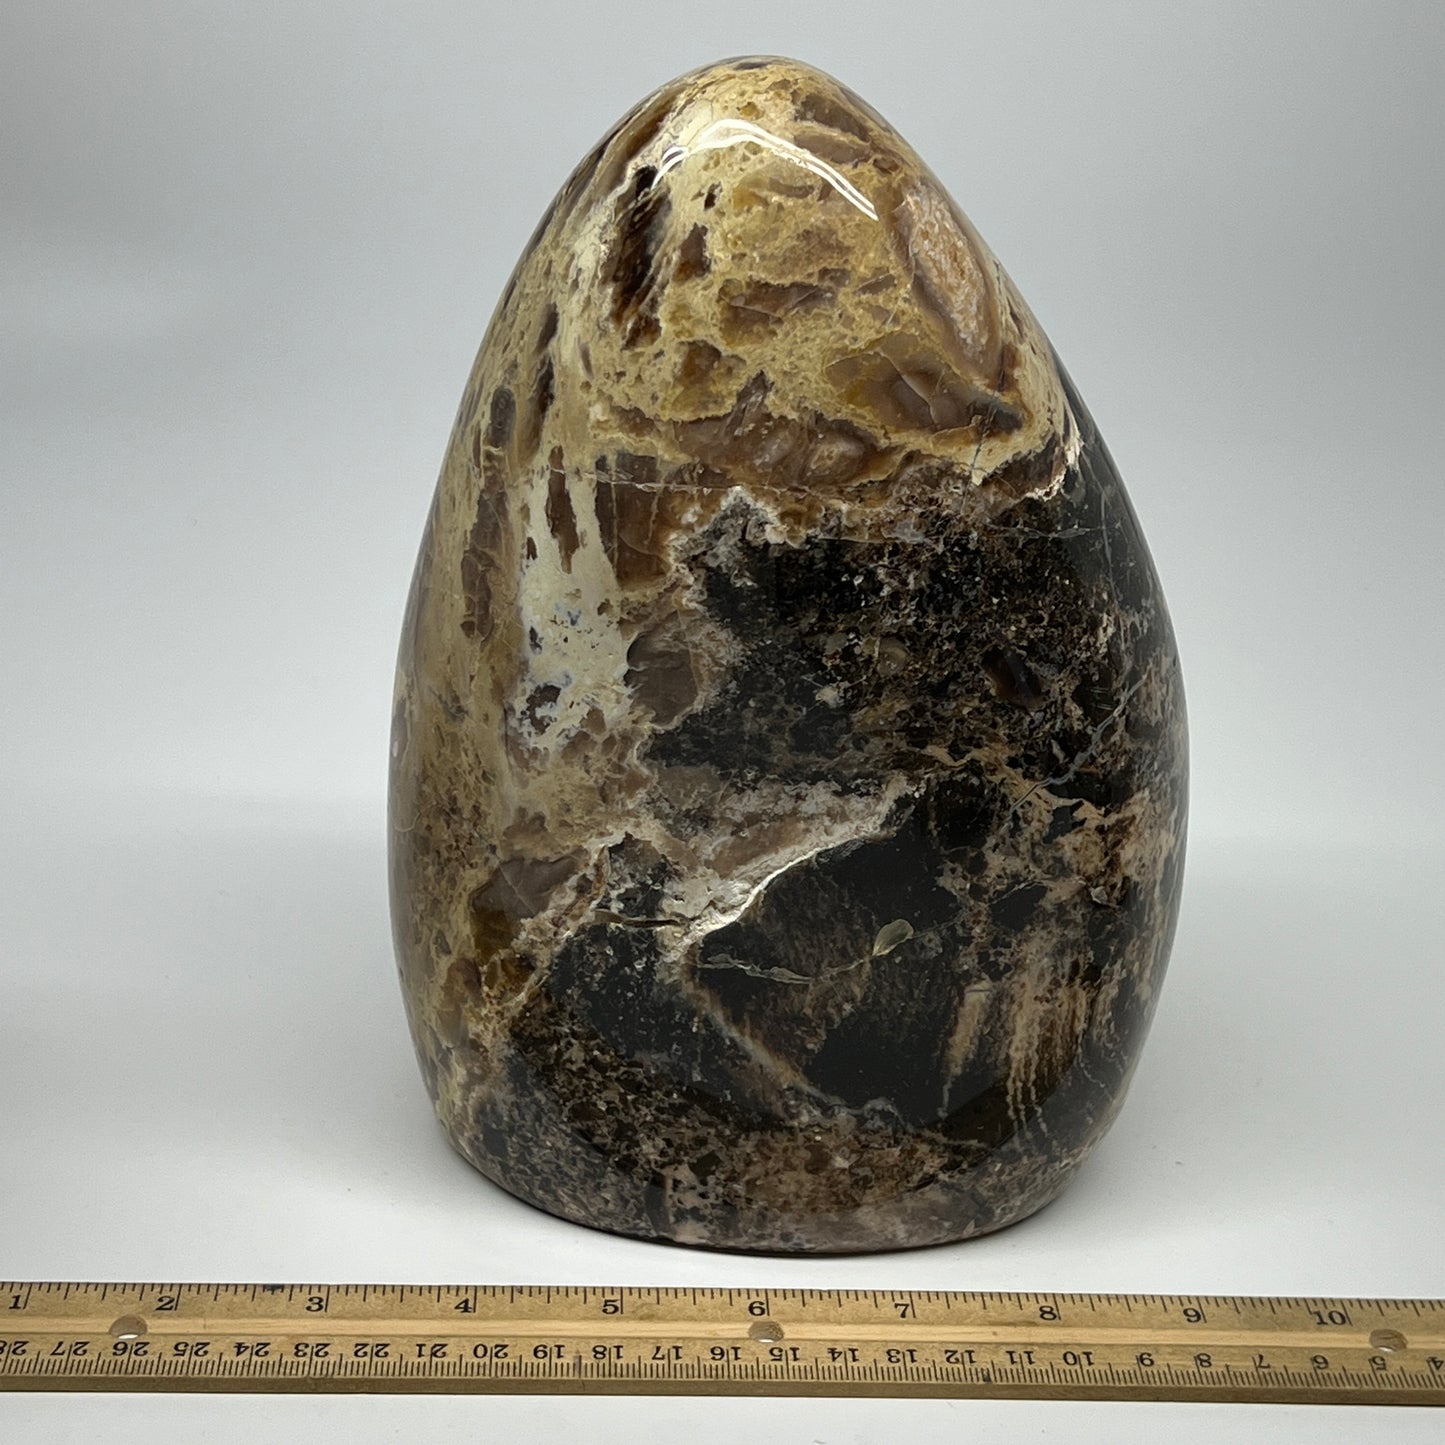 4030g,8.25"x6.5"x4.4" Black Opal Freeform Polished Gemstone @Madagascar,B21104